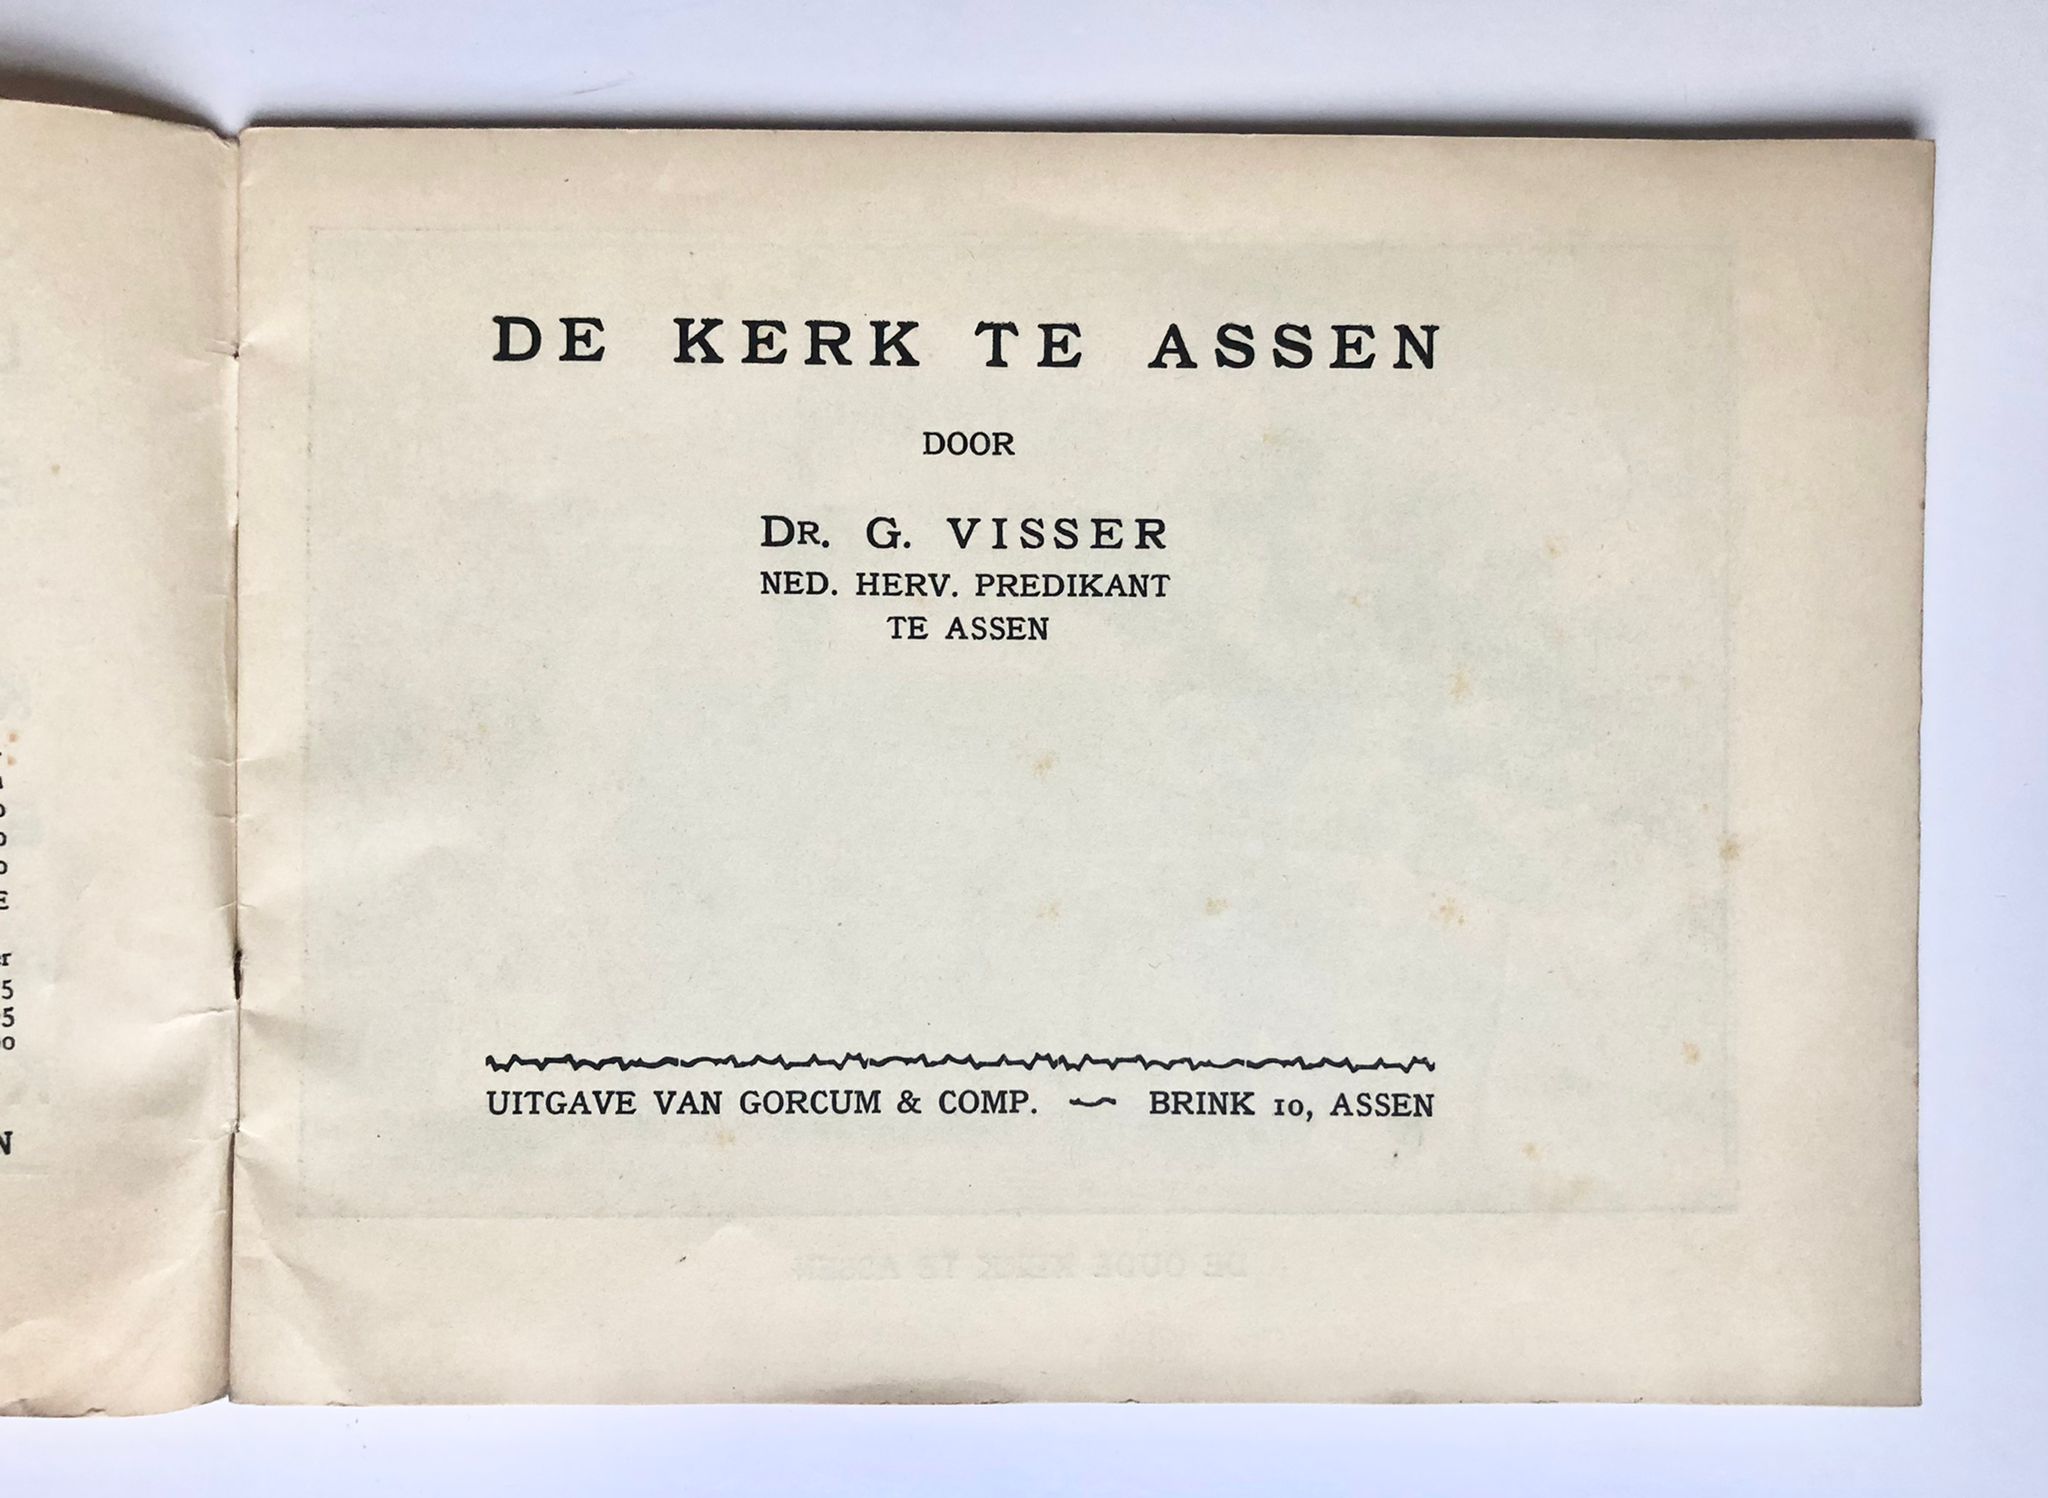 [Assen, Drenthe] De Kerk te Assen, Door Dr. G. Visser, Uitgave van Gorcum & Comp., Assen, 20 pp.